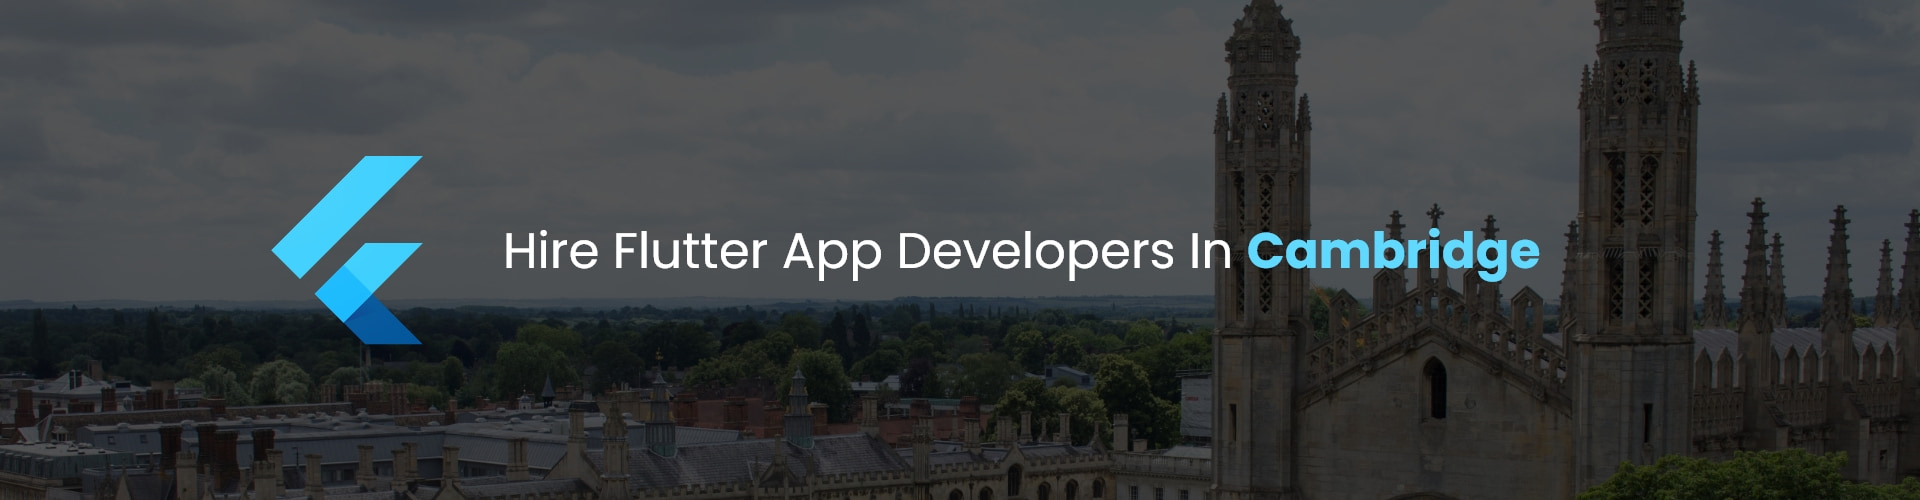 hire flutter app developers in cambridge